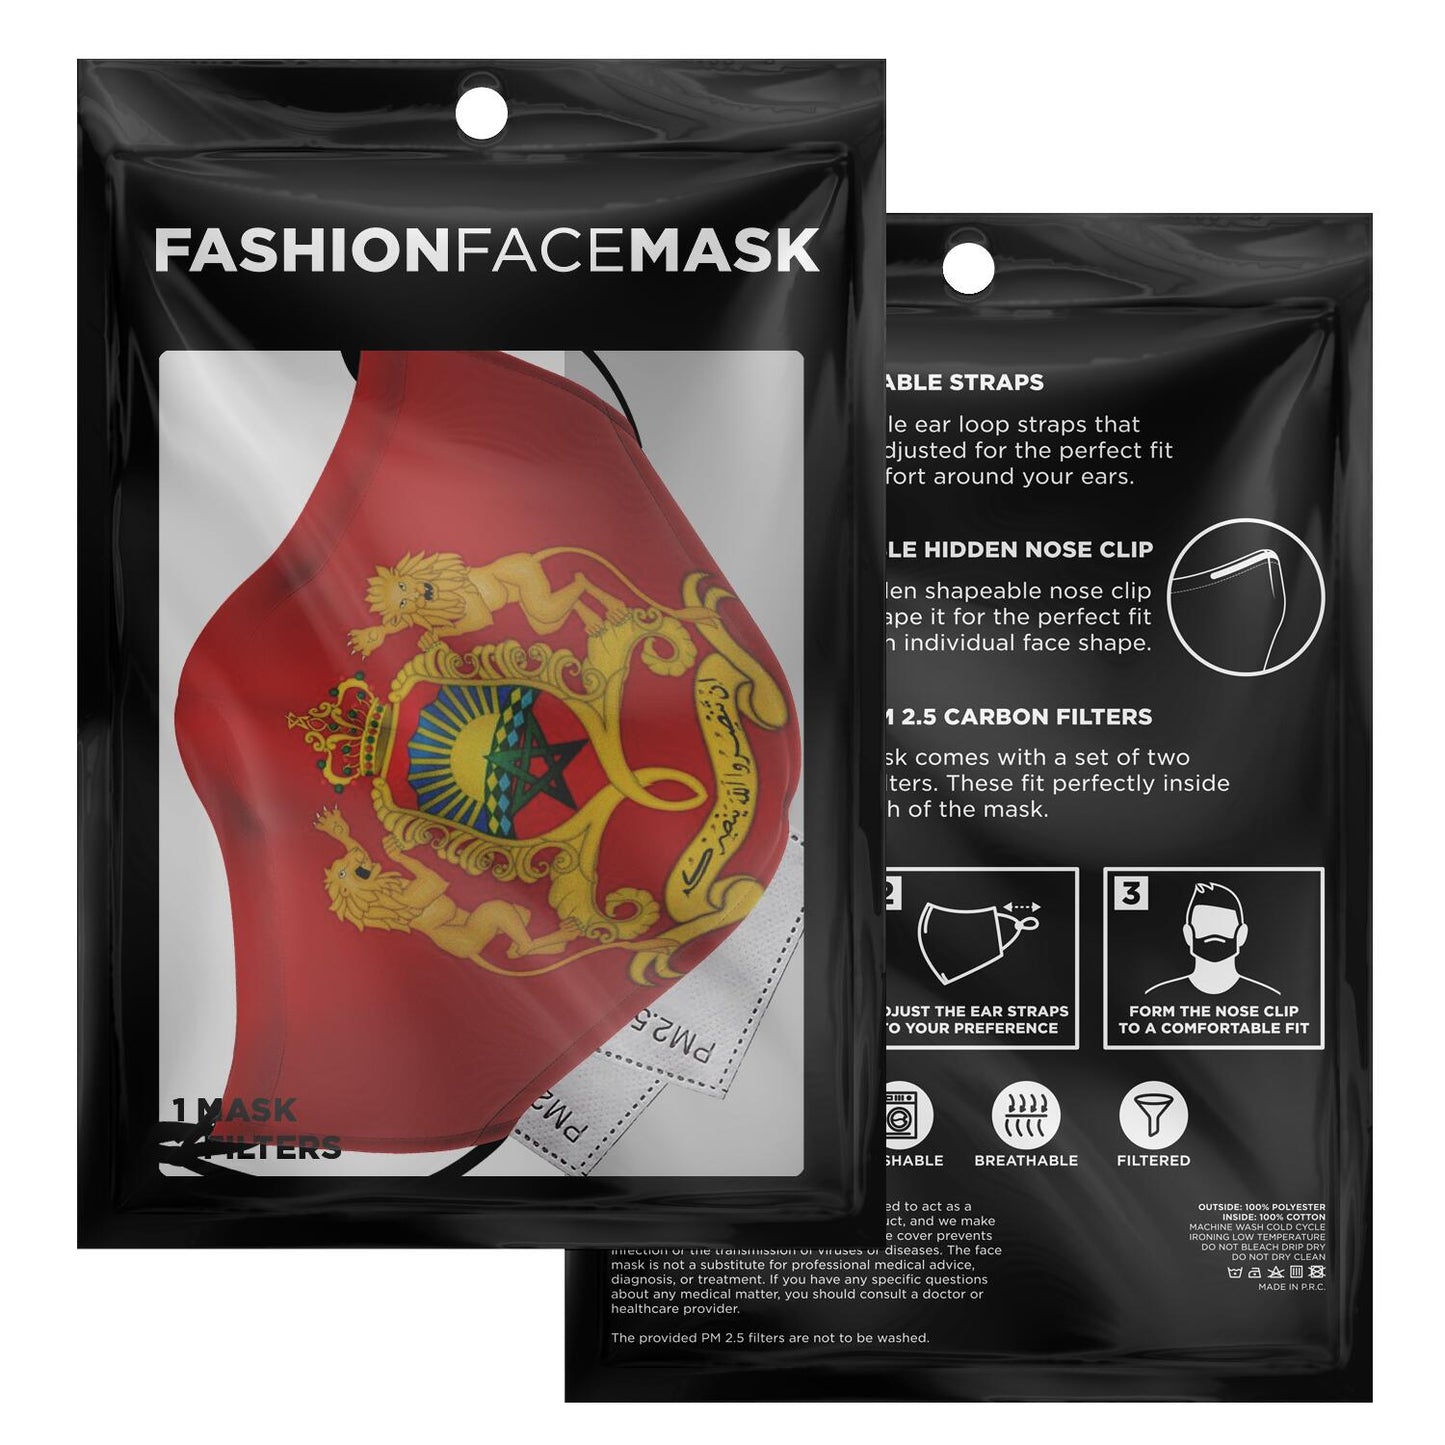 Masque facial imprimé personnalisé (Royaume du Maroc)